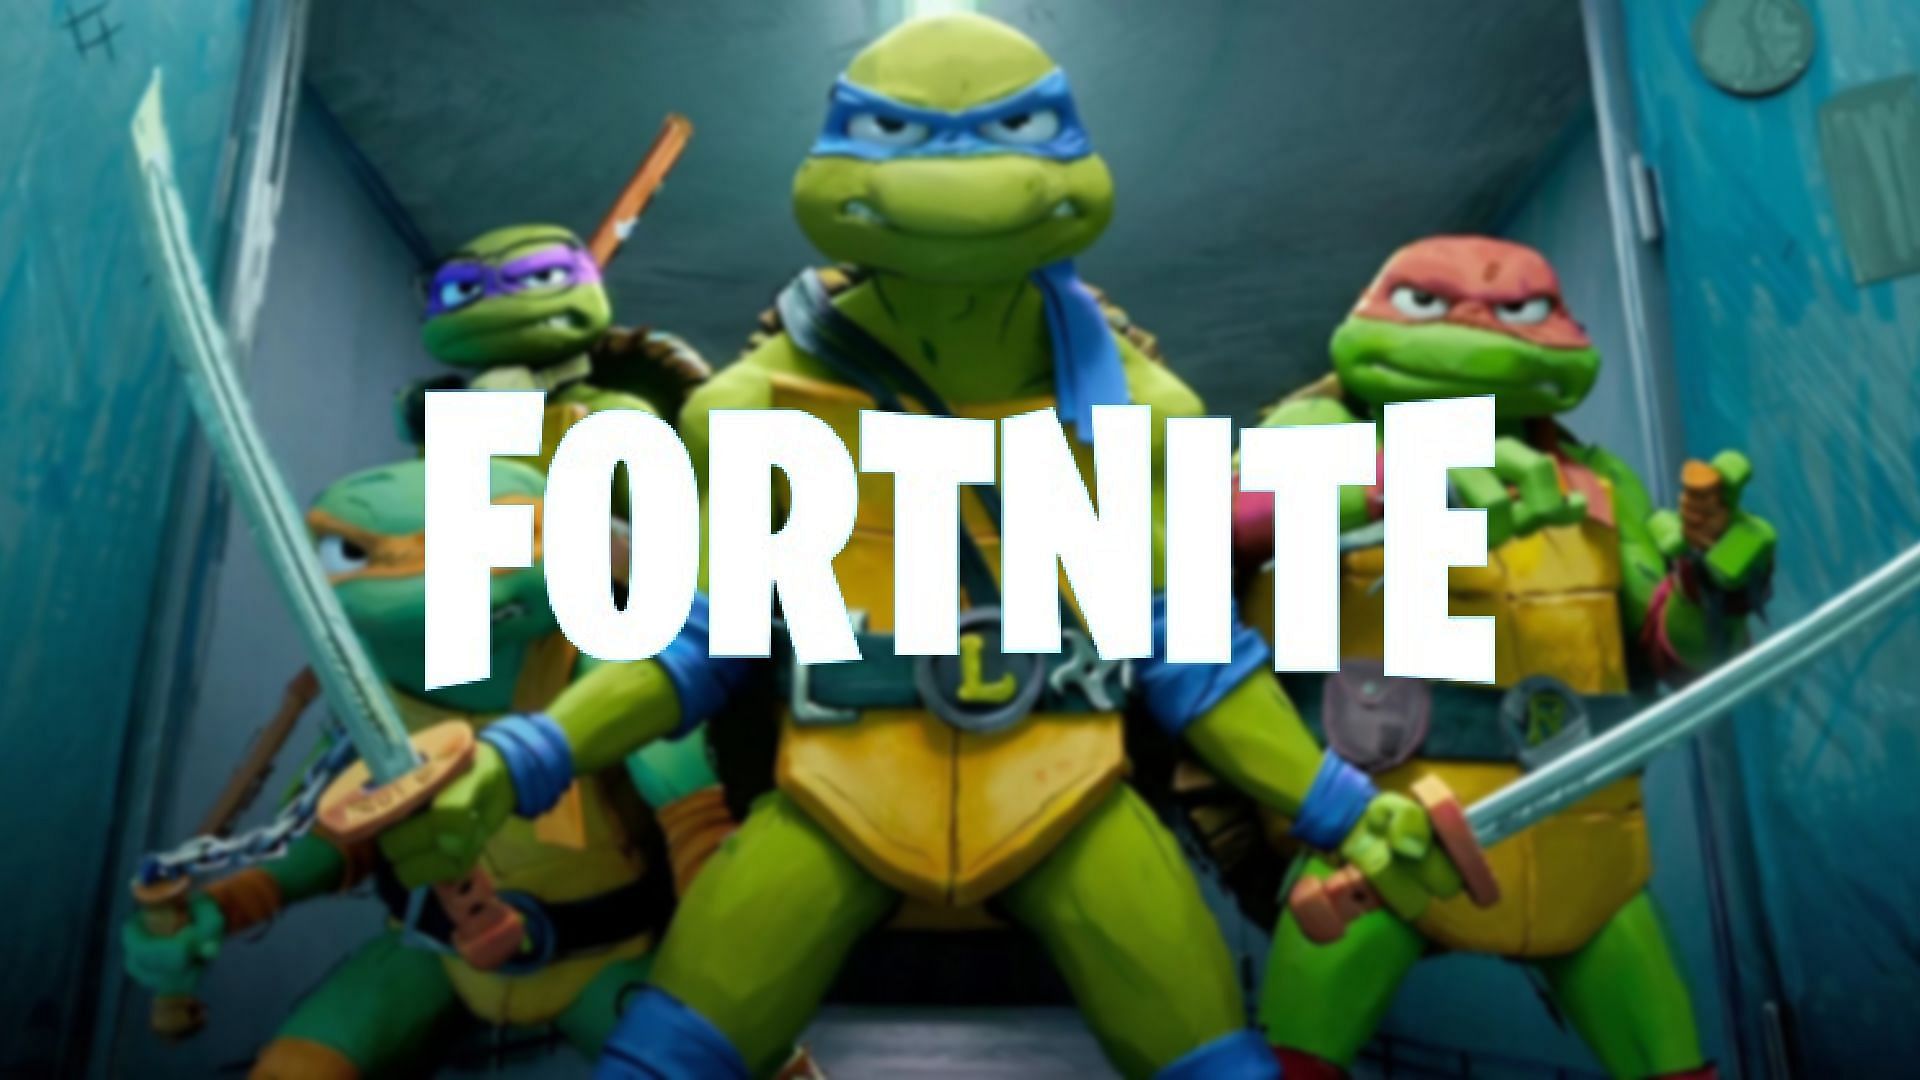 Fortnite x Teenage Mutant Ninja Turtles Leaked skins, potential